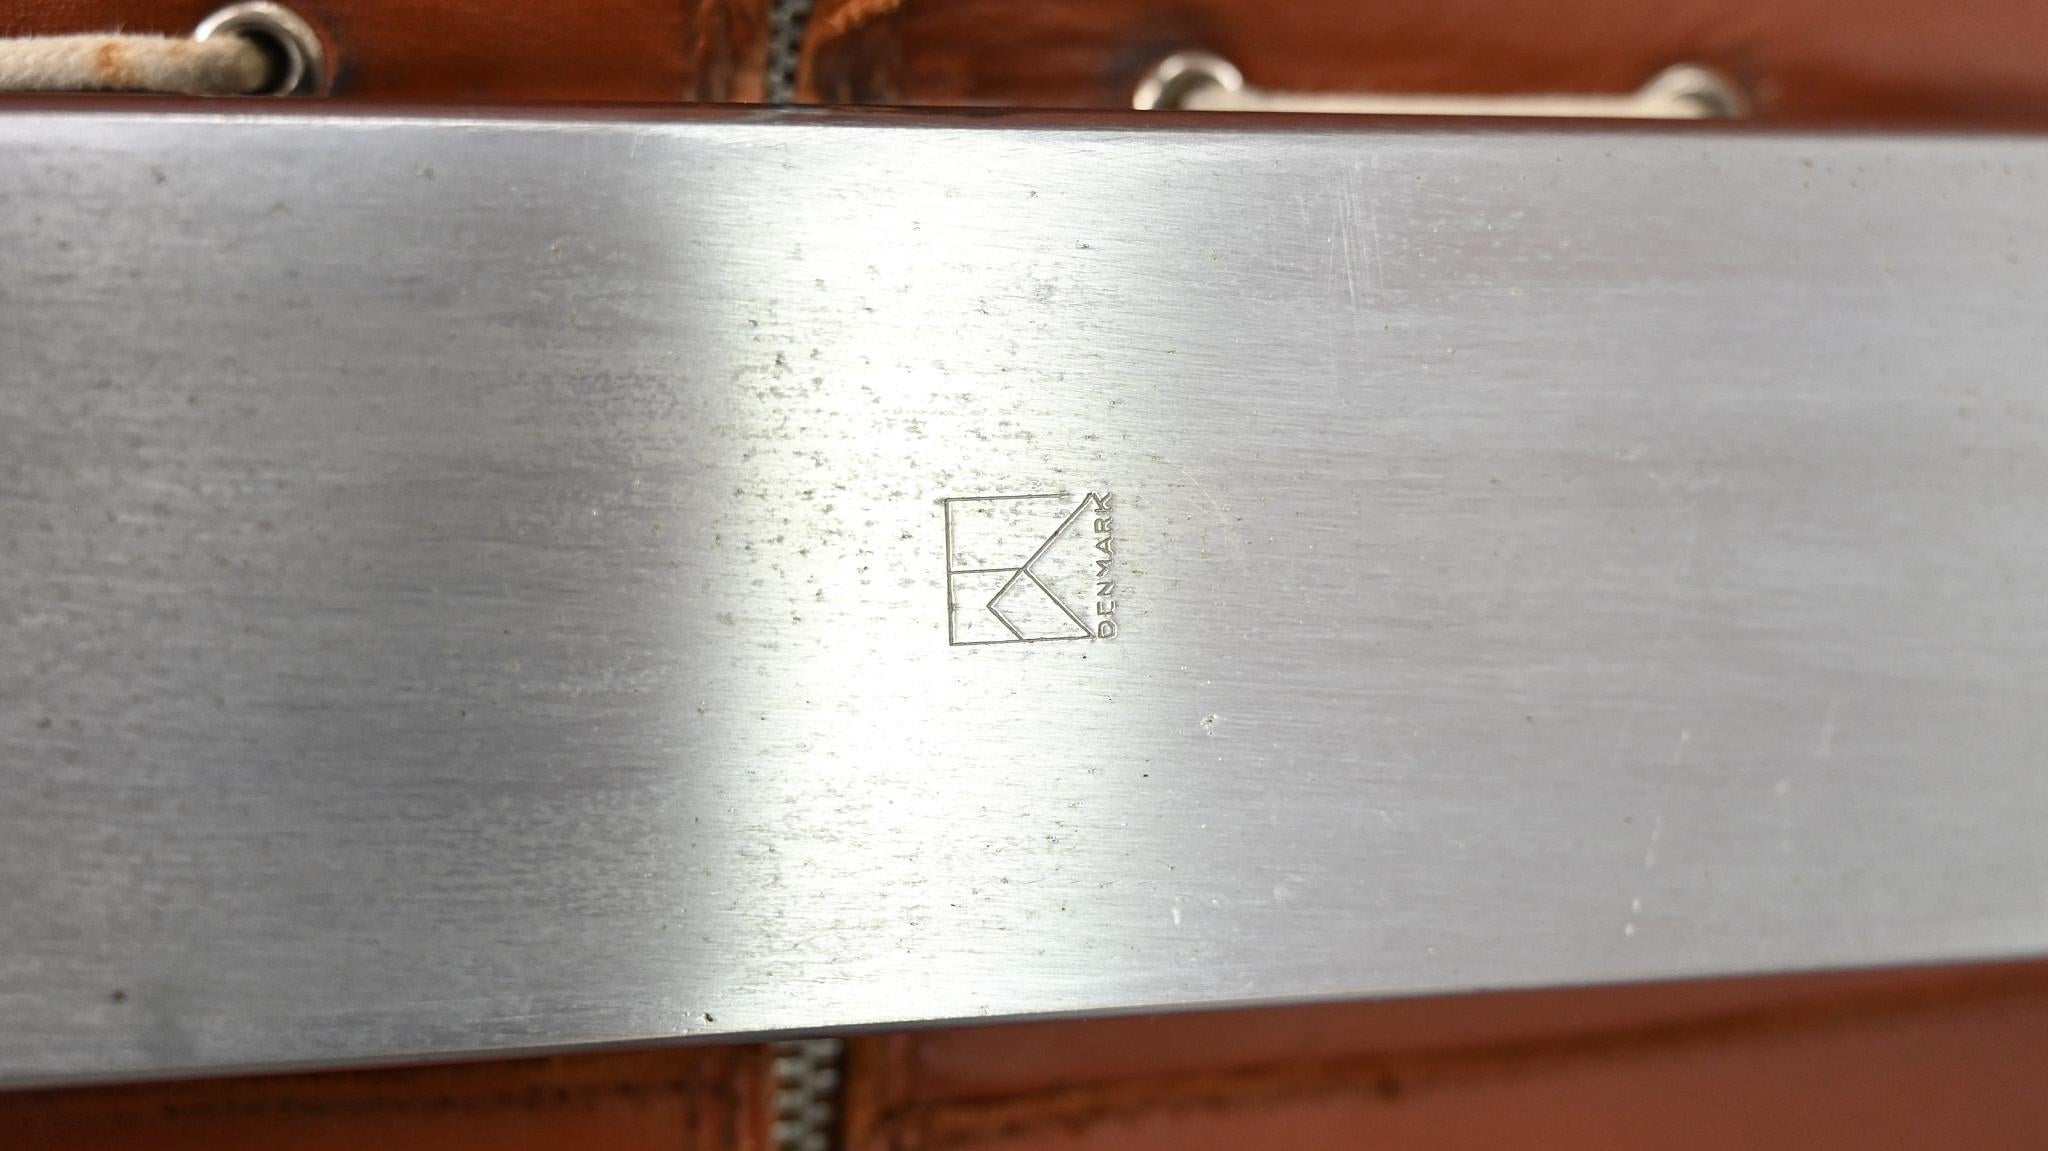 Poul Kjaerholm PK20 Lounge Chair E. Kold Christensen Denmark Steel Leather 1968 For Sale 13